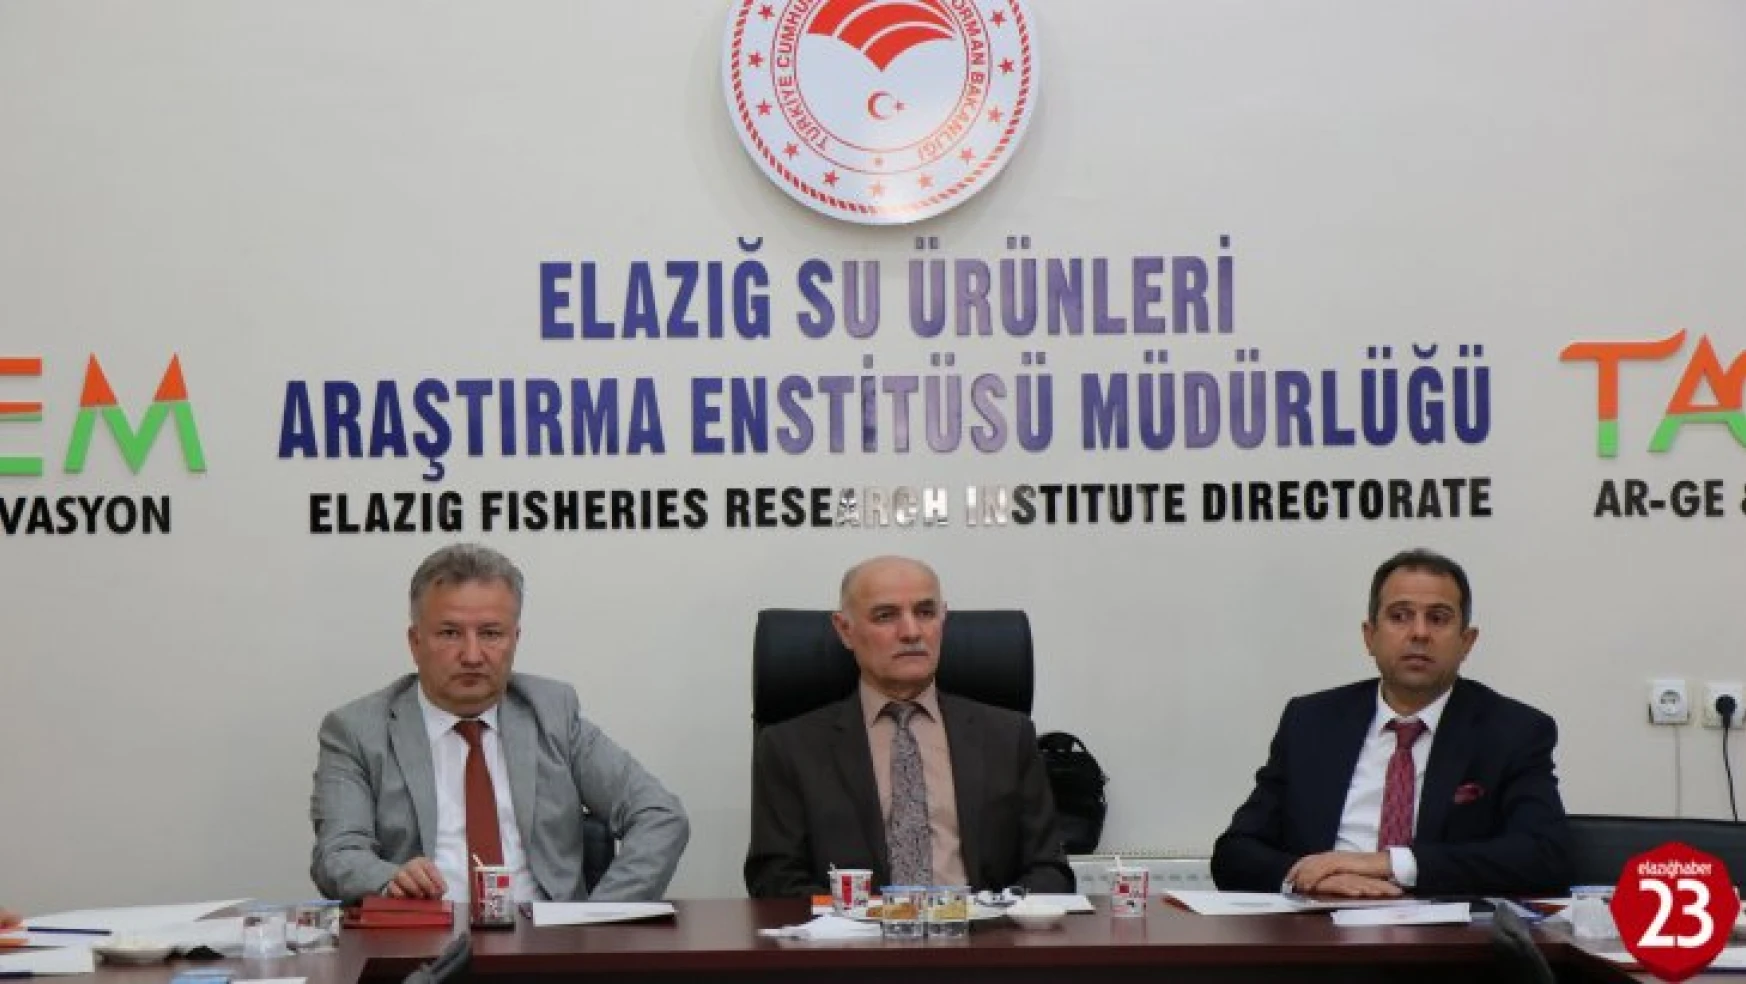 Elazığ Su Ürünleri Araştırma Enstitüsü Müdürlüğü Koordinasyonunda Su Ürünleri Sektör Toplantısı Yapıldı